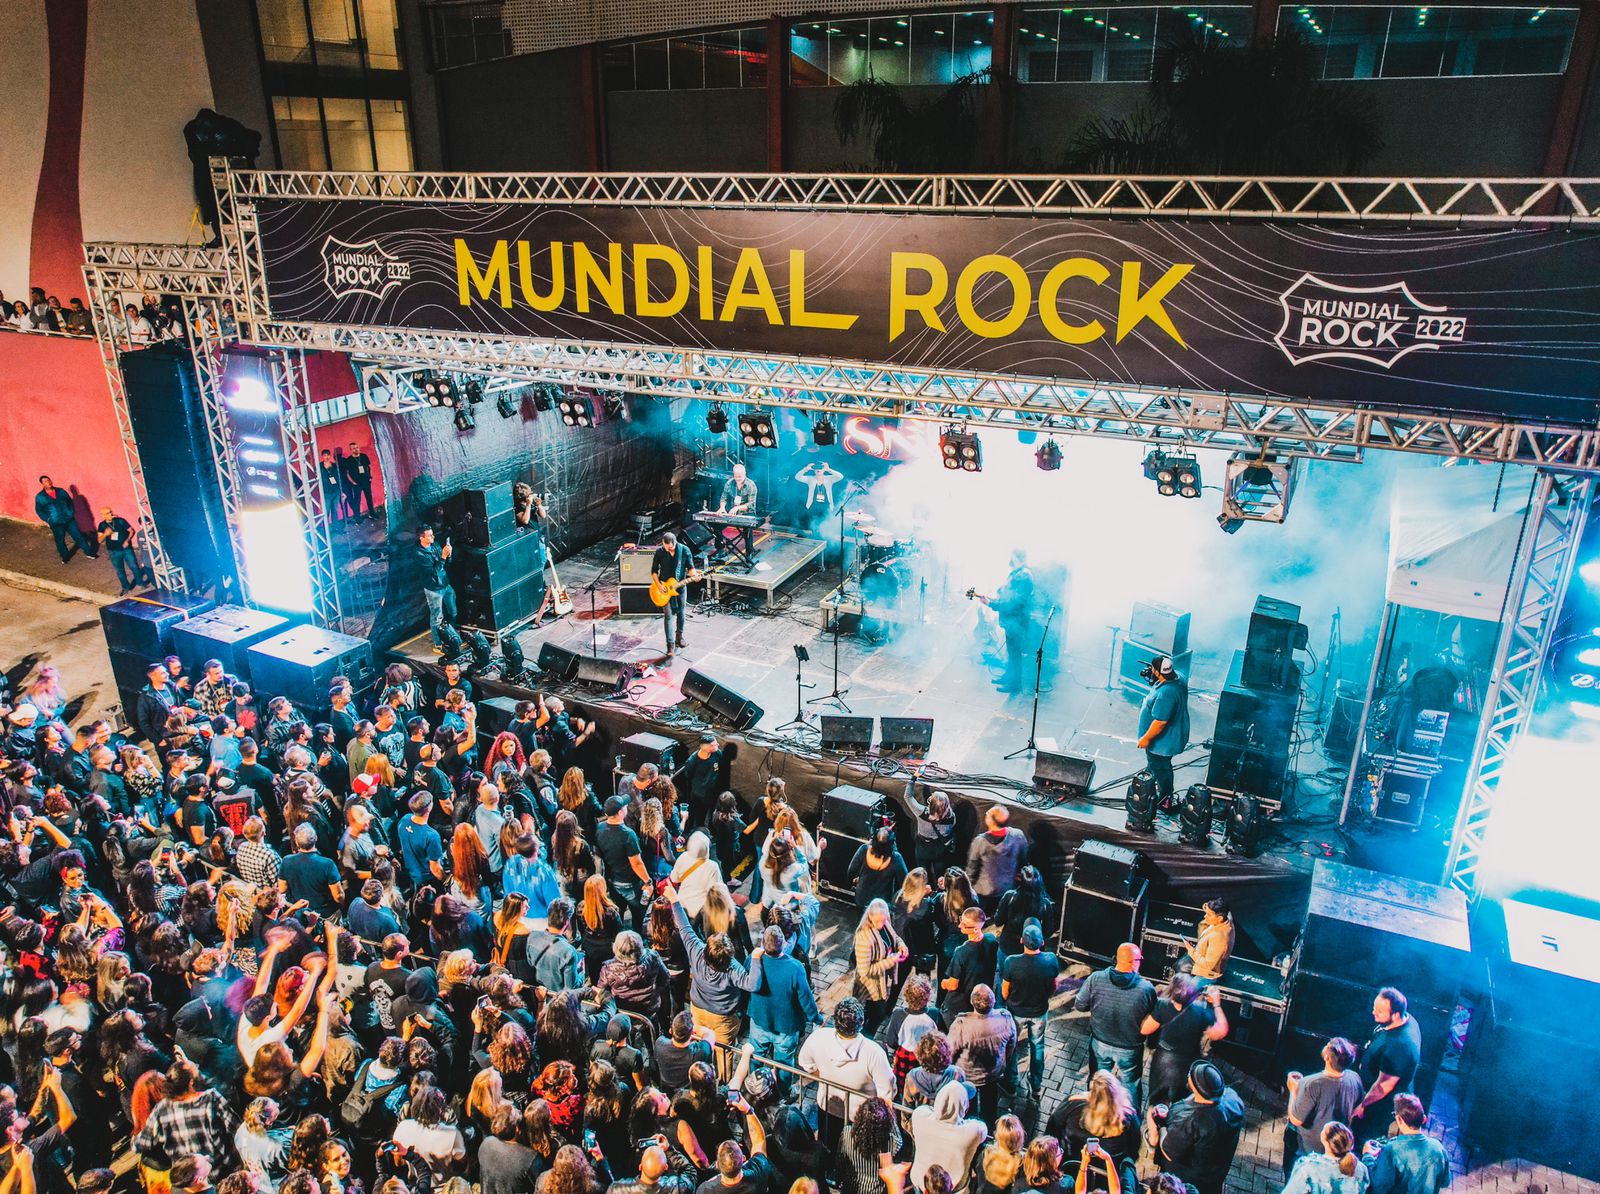 Dia Mundial do Rock: quem é o roqueiro brasileiro? - Consumidor